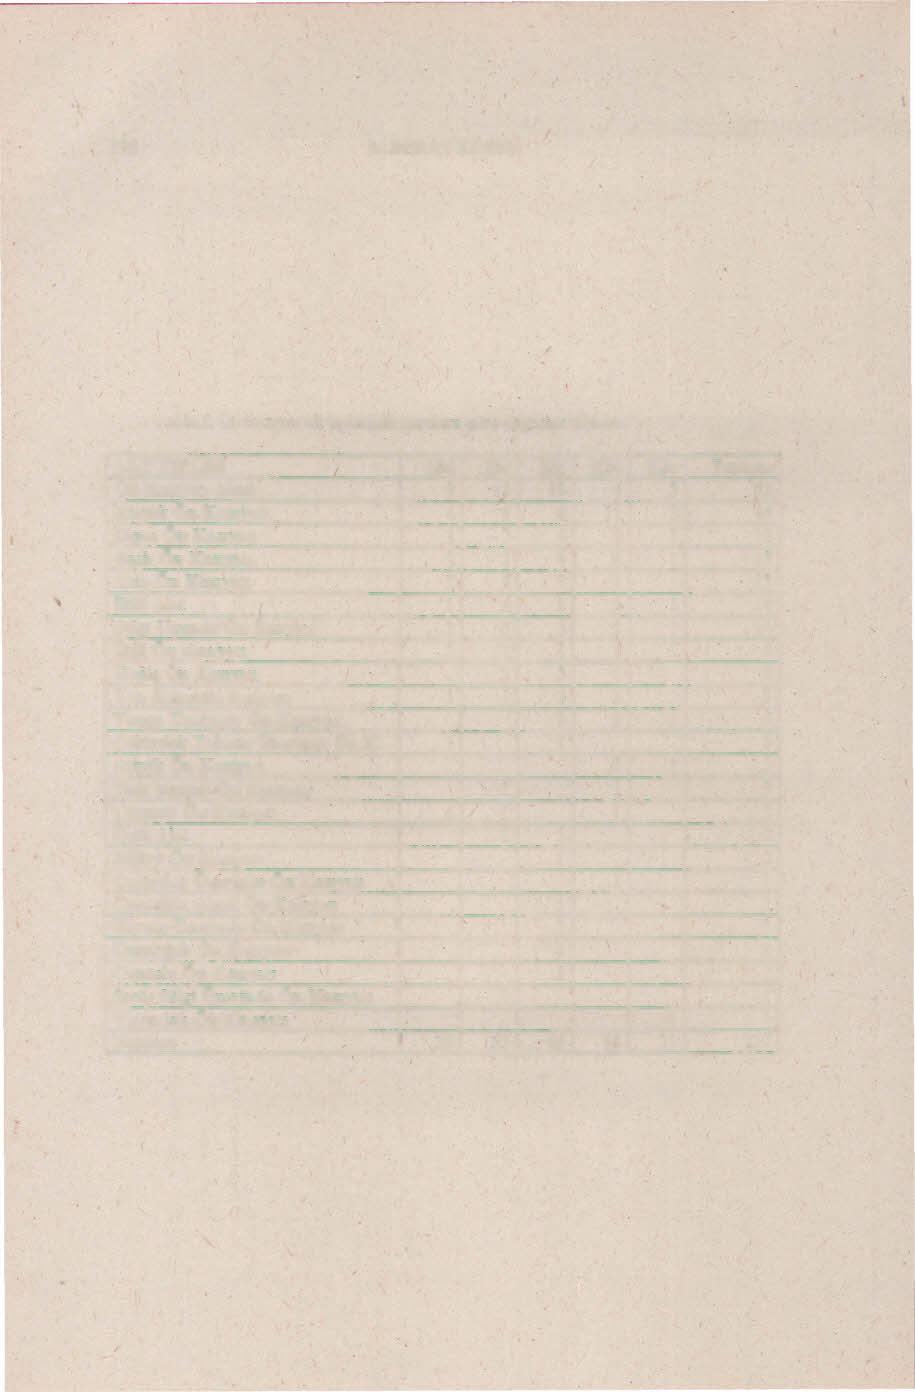 198 M.BERAY KÖSEM Tablo i: Ön kazıyeı alt tiplerinin karelere göre dağılımı tablosu.